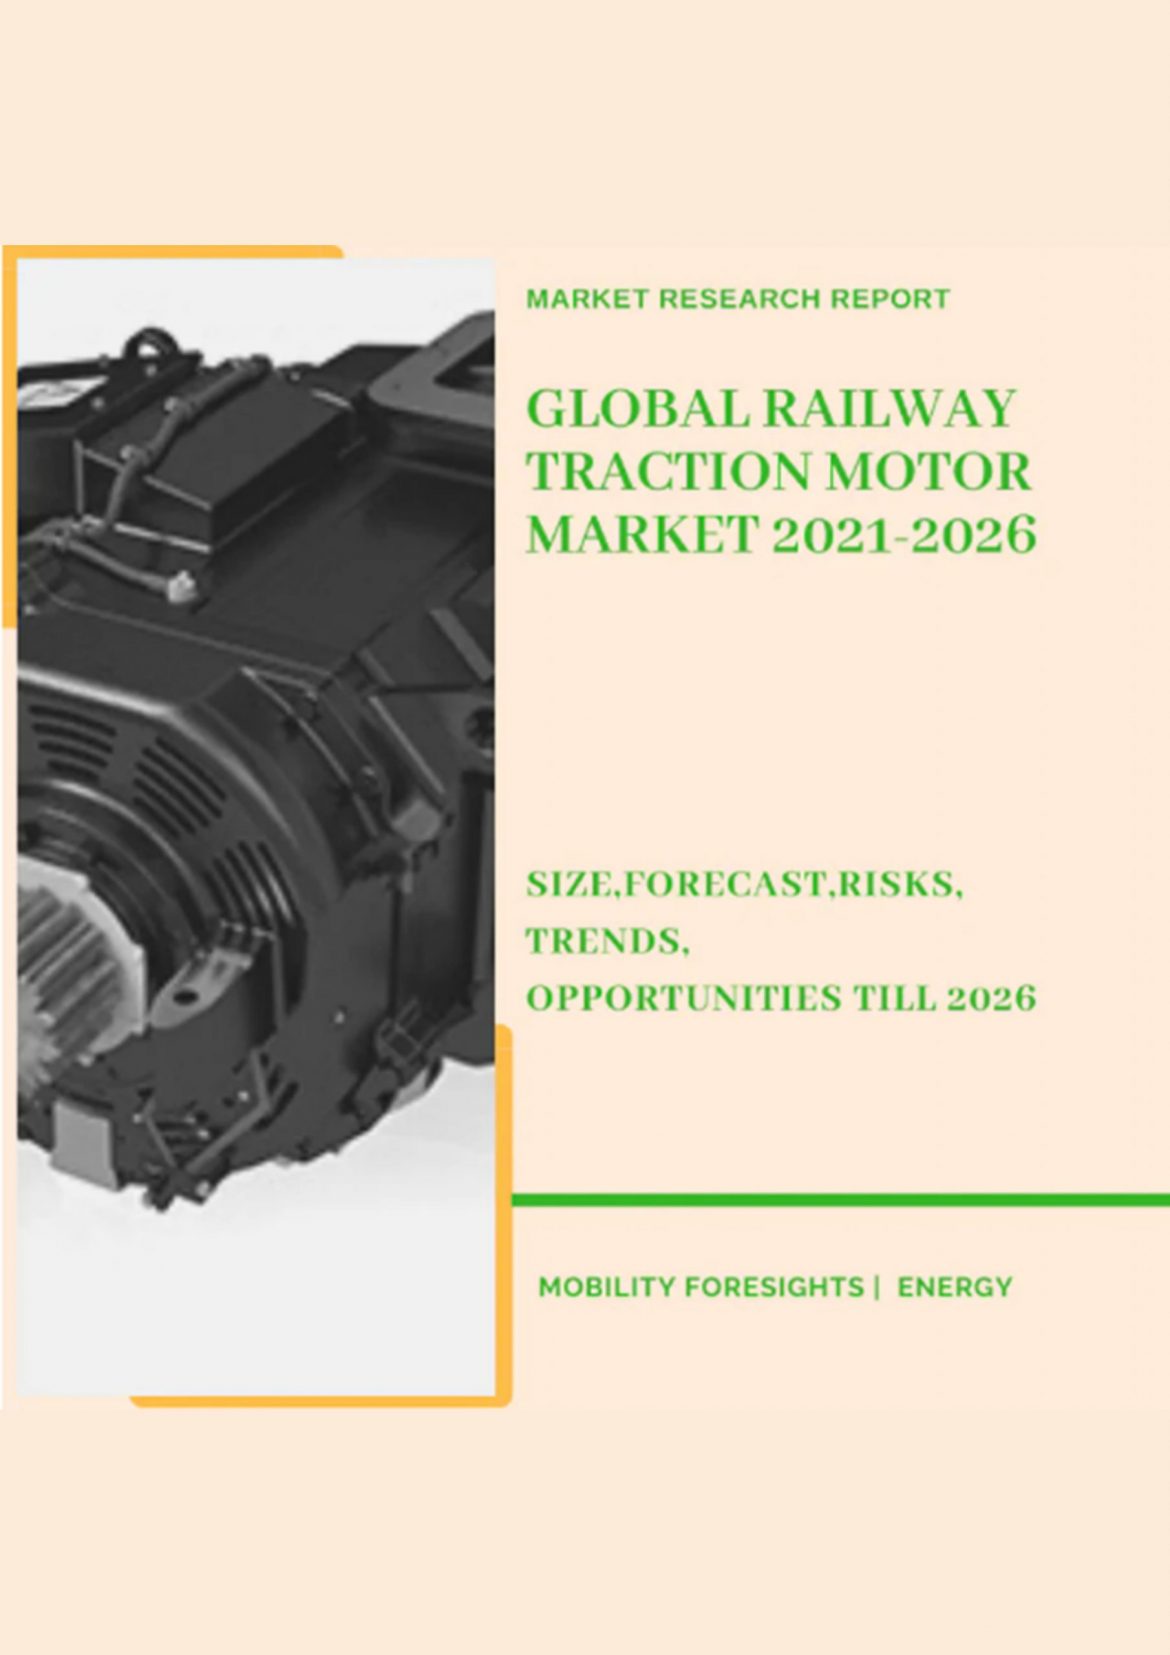 Global Railway Traction Motor Market 2021-2026